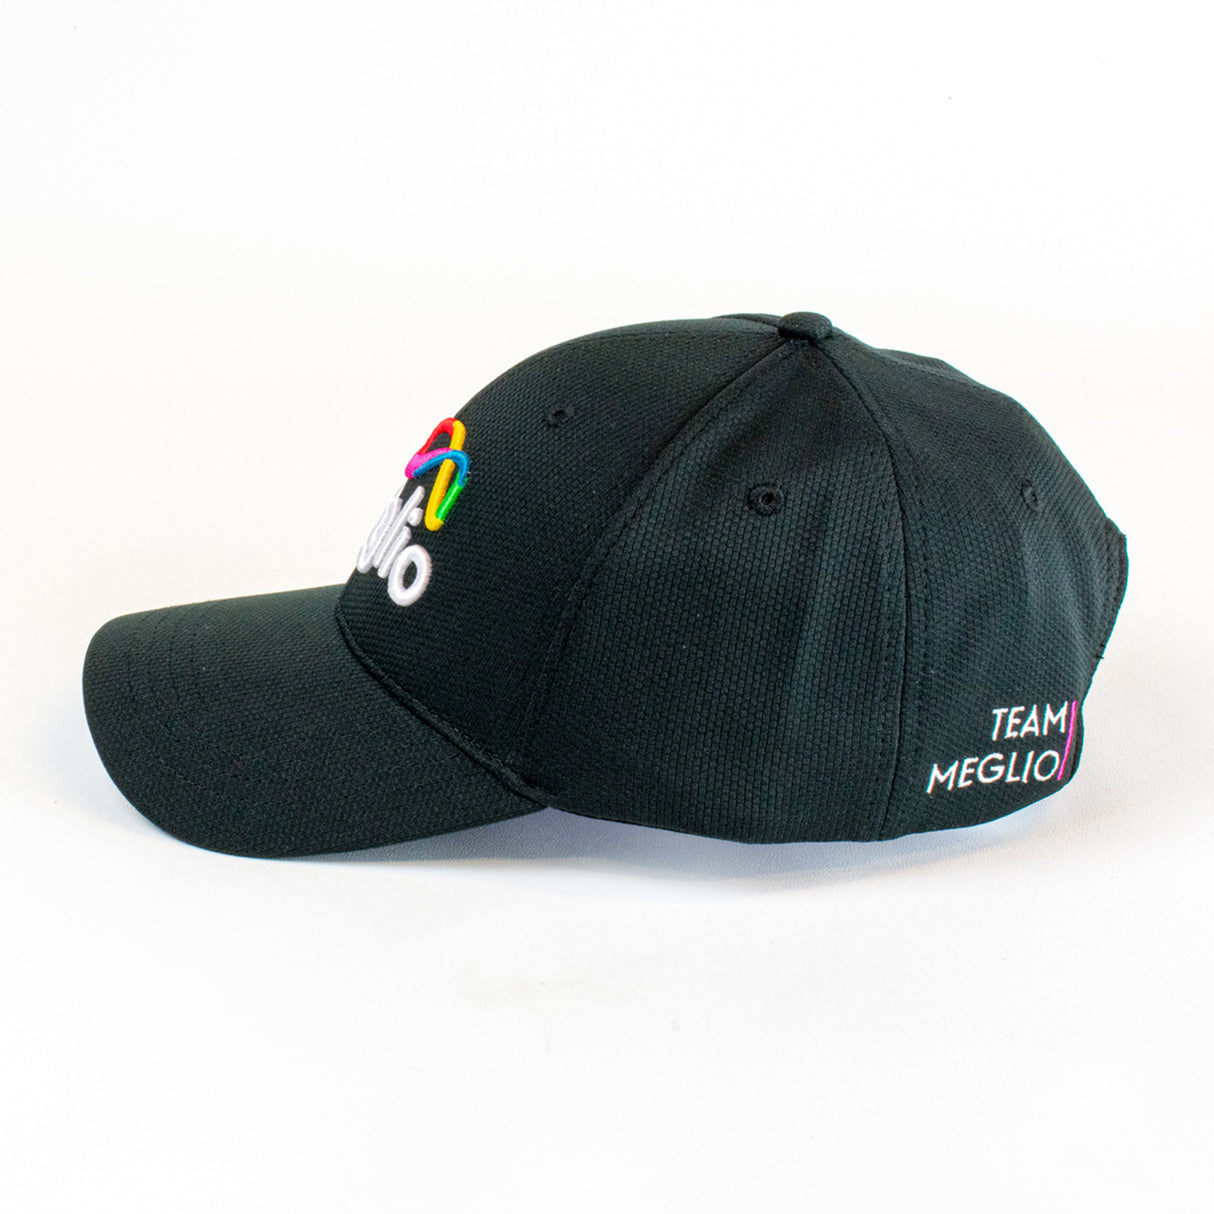 Meglio Baseball Cap - Premium Quality Adjustable Cap - Classic 6 Panel Design